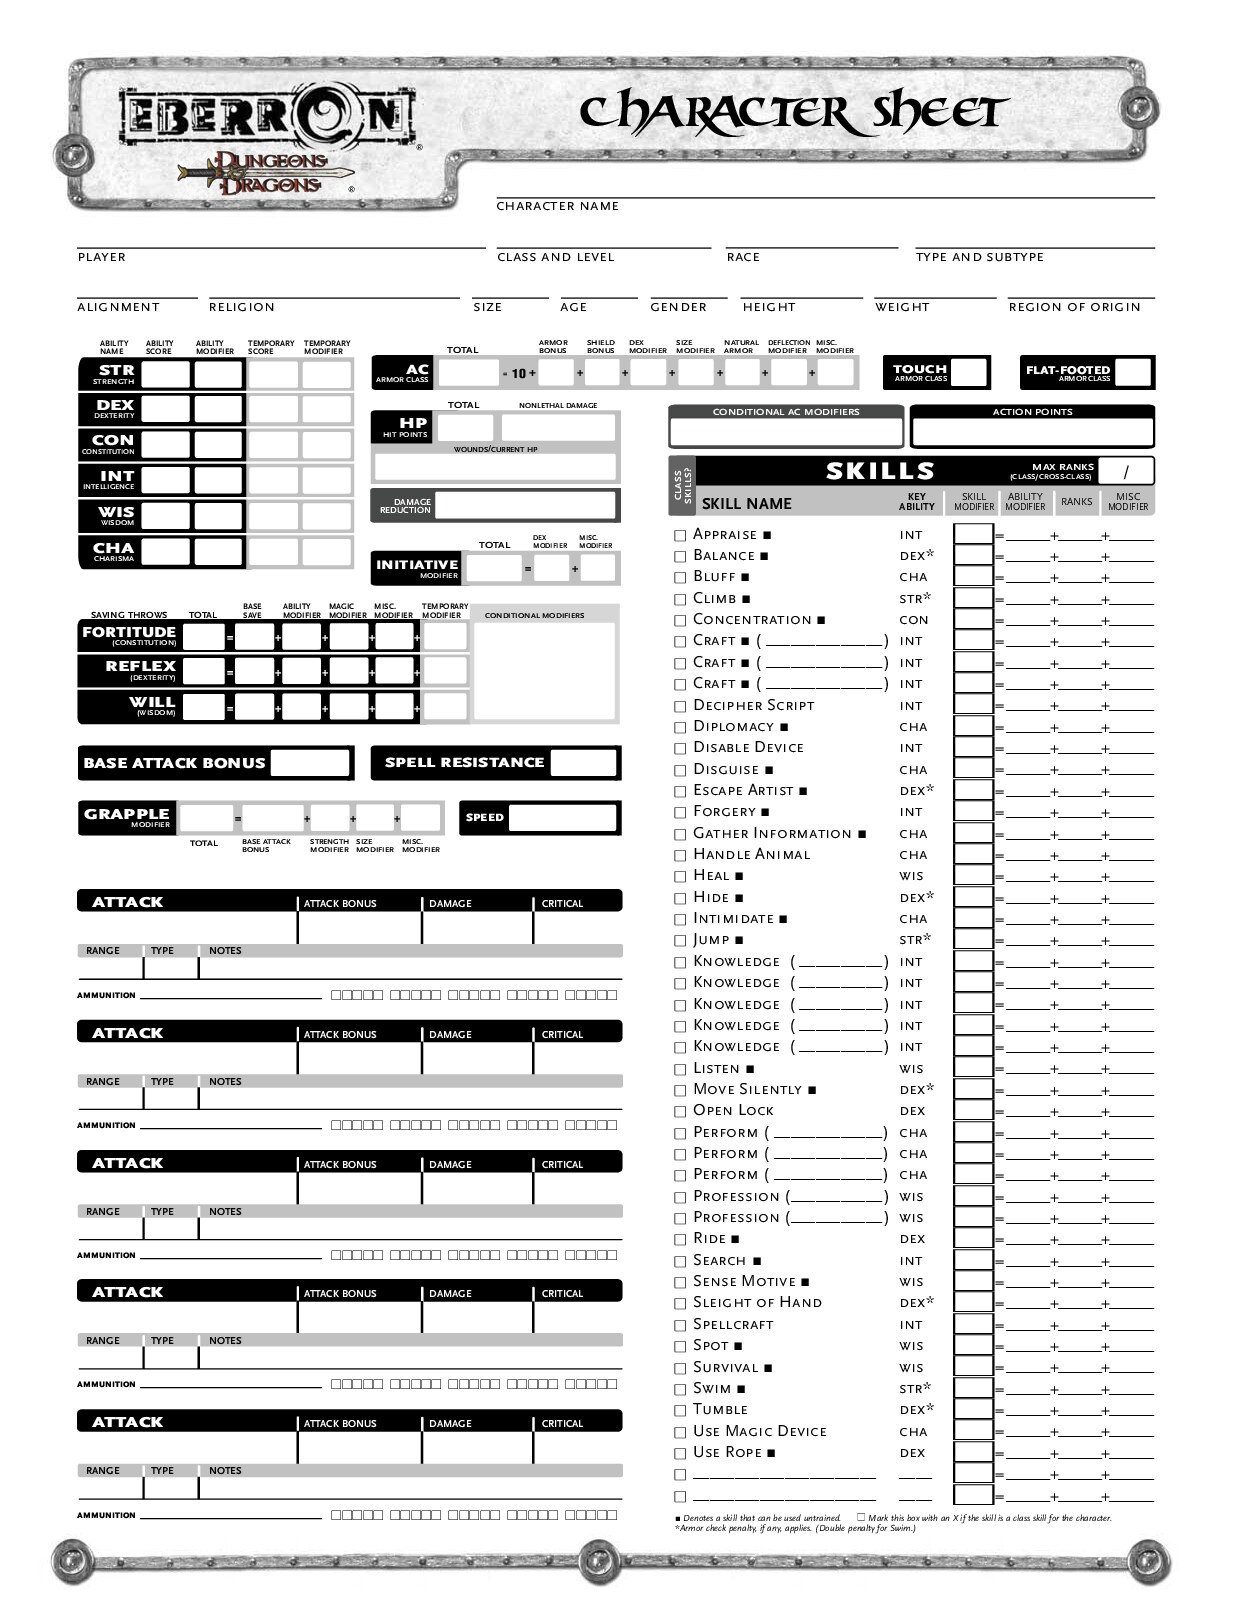 Eberron Character Sheet